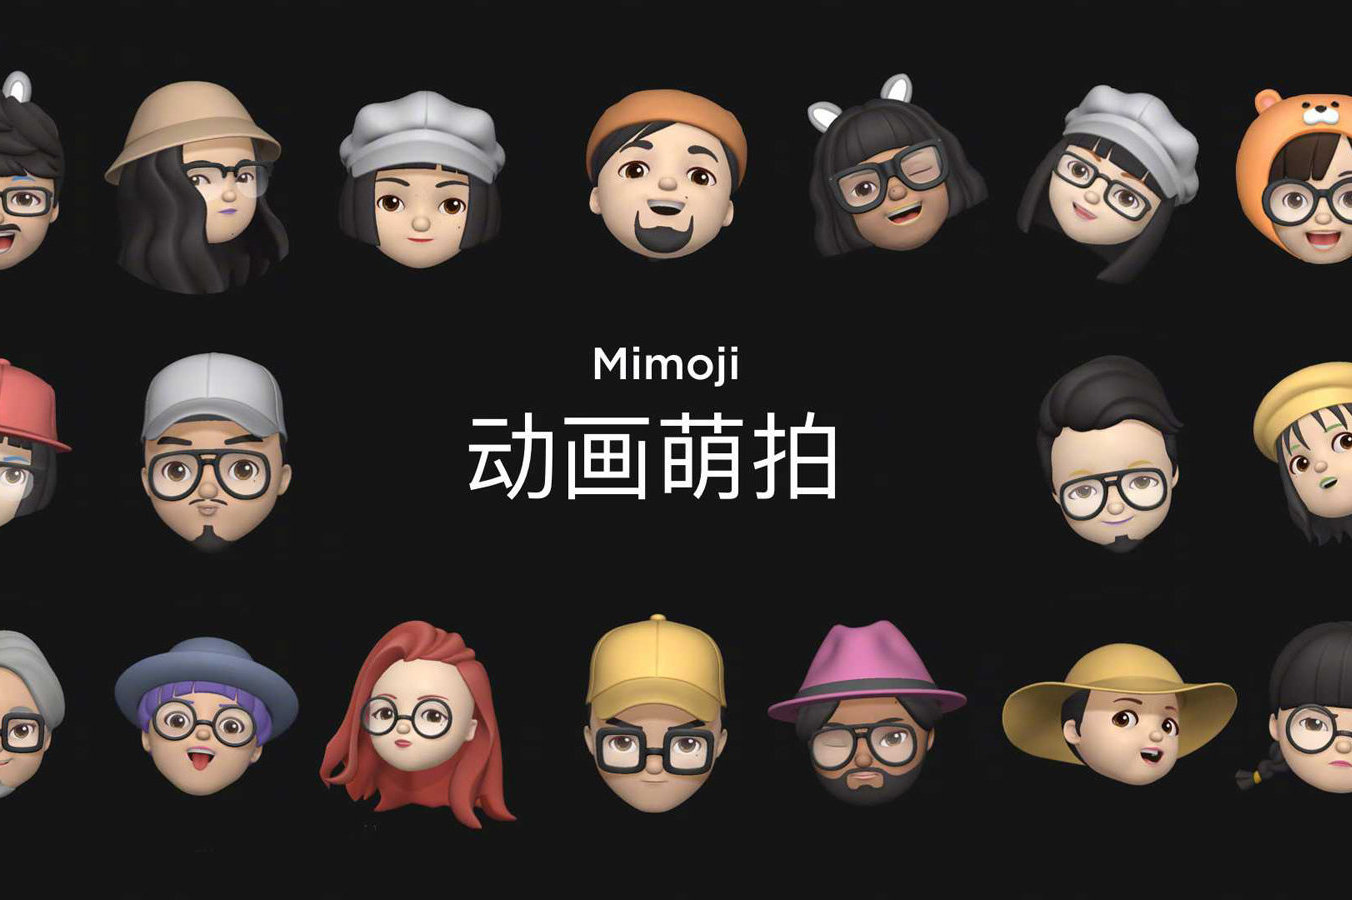 小米推出 Mimoji 萌拍功能，被疑抄袭苹果